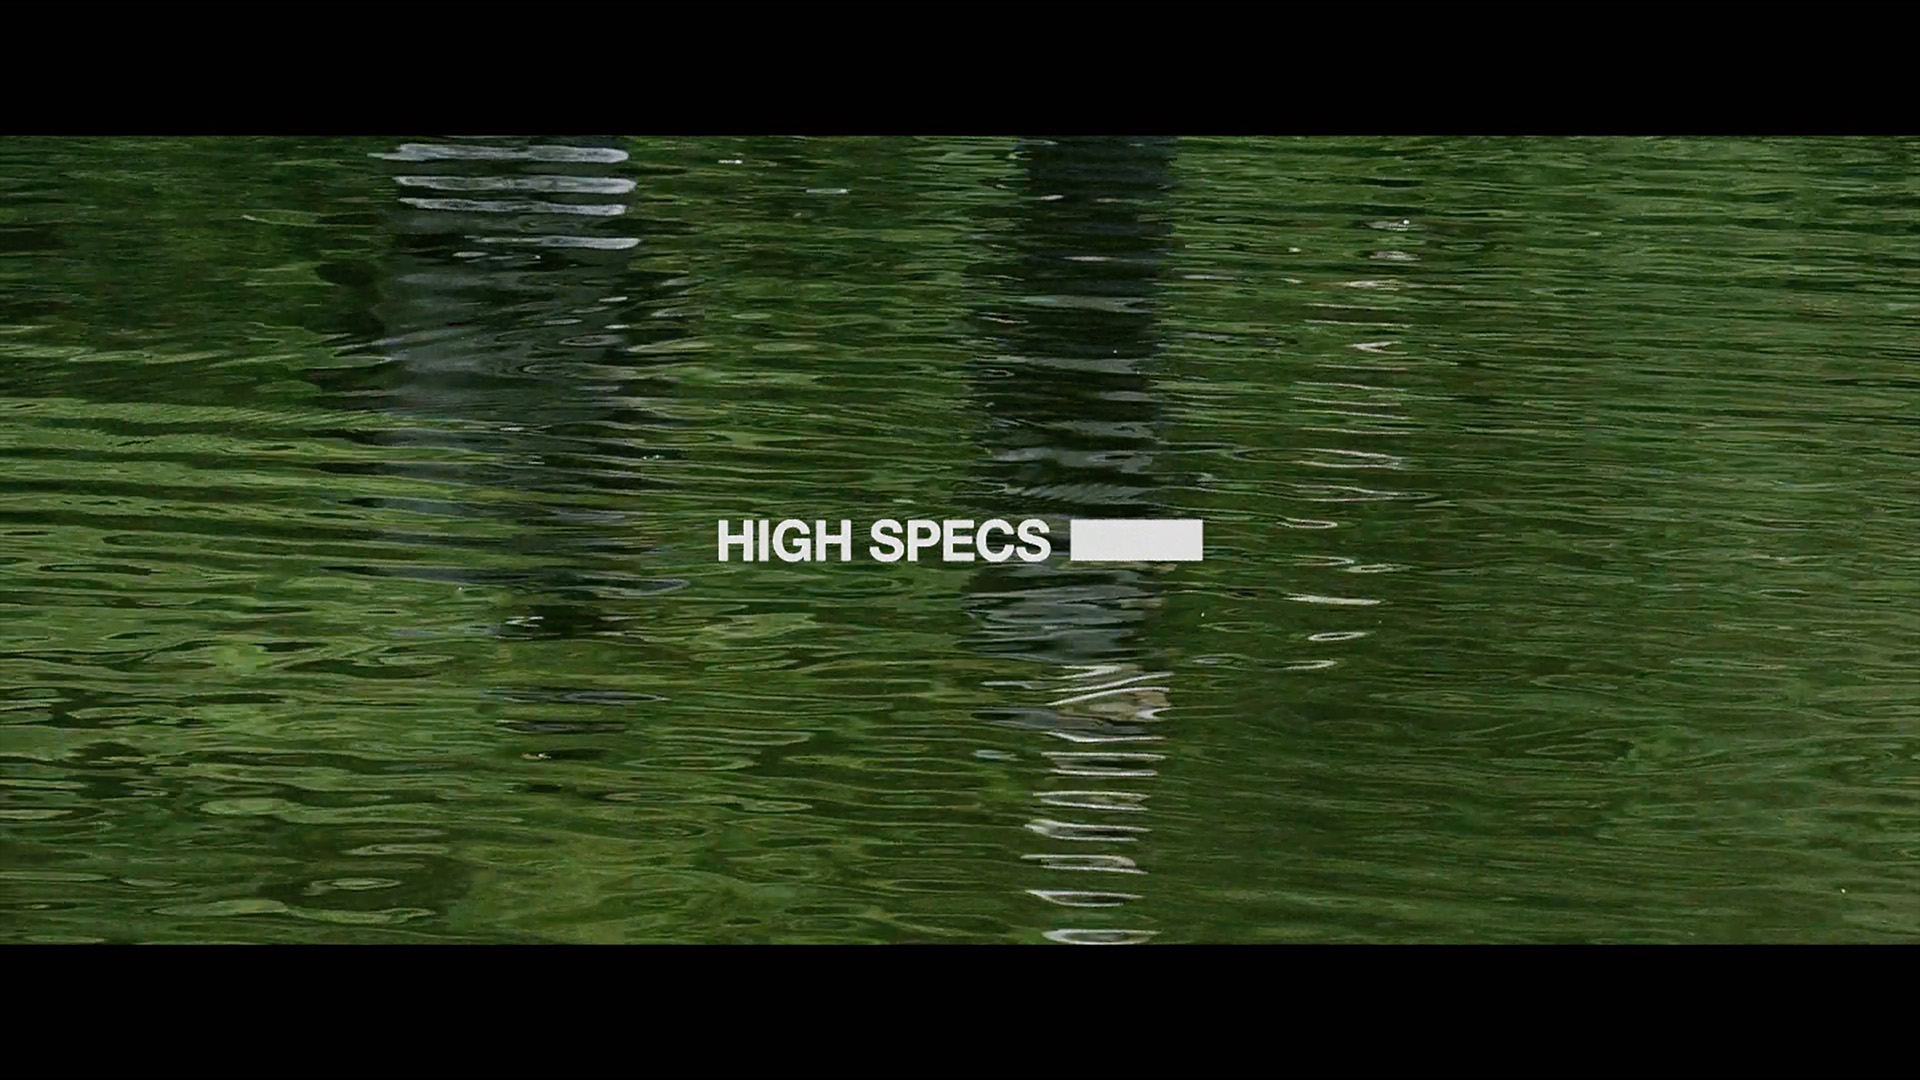 HIGH SPECS | HEADS